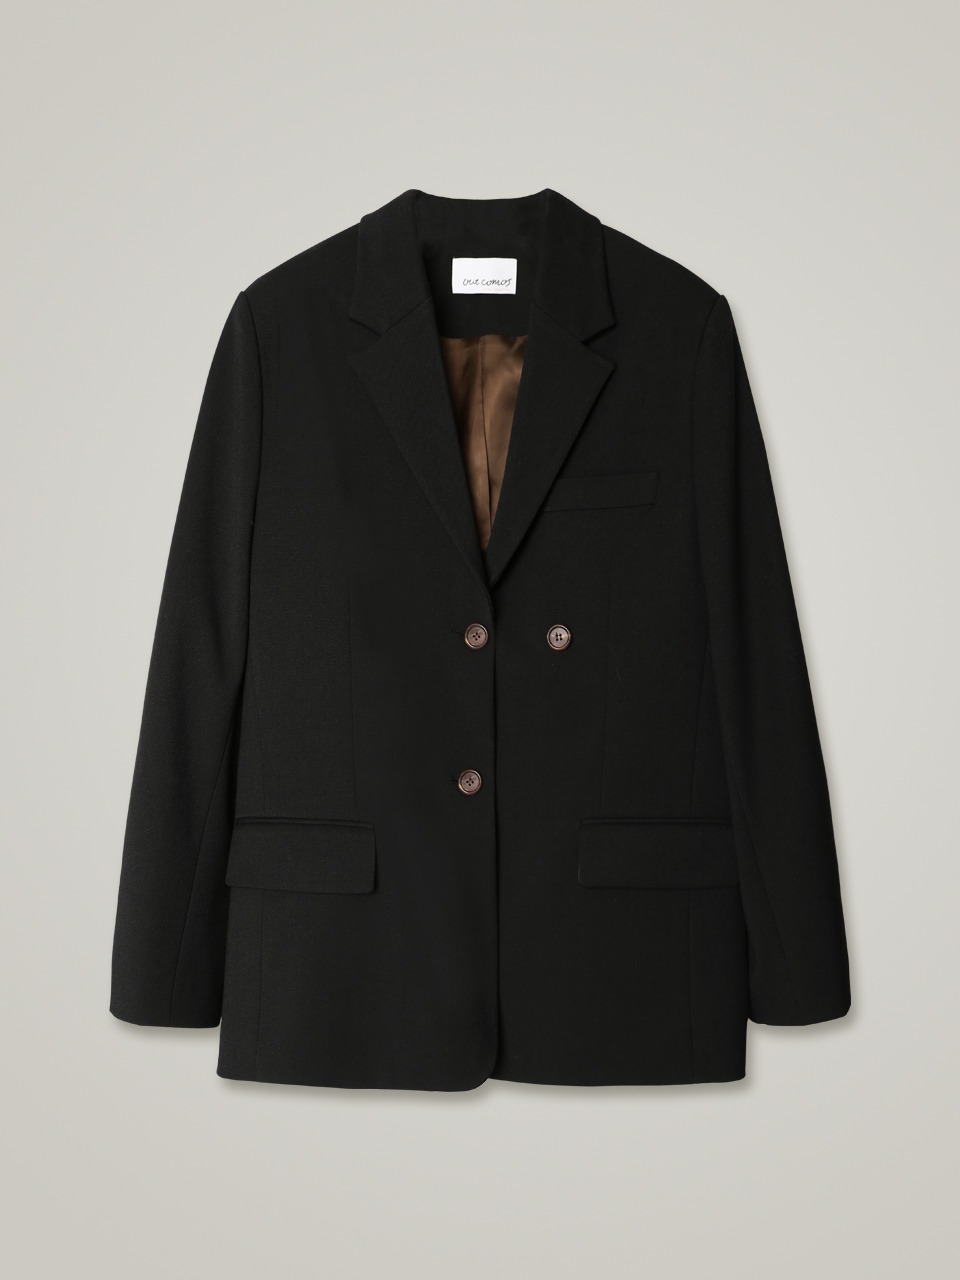 comos 955 double twill jacket (black)